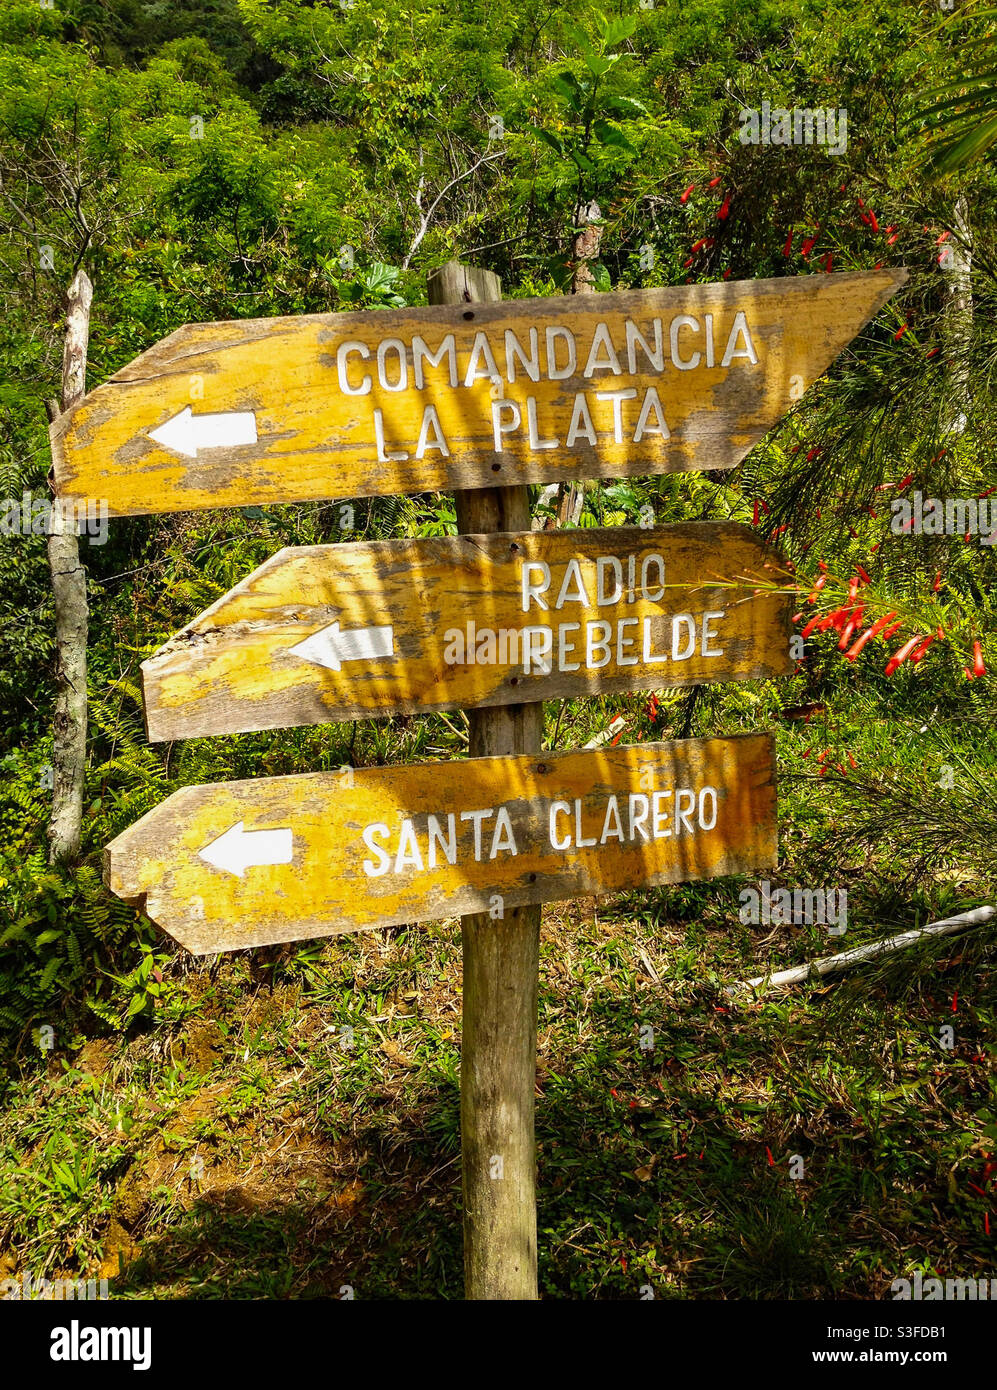 Panneau en bois avec des indications vers des endroits dans les montagnes de la Sierra Maestra associés aux lieux de cachette des révolutionnaires pendant la révolution cubaine, Cuba Banque D'Images